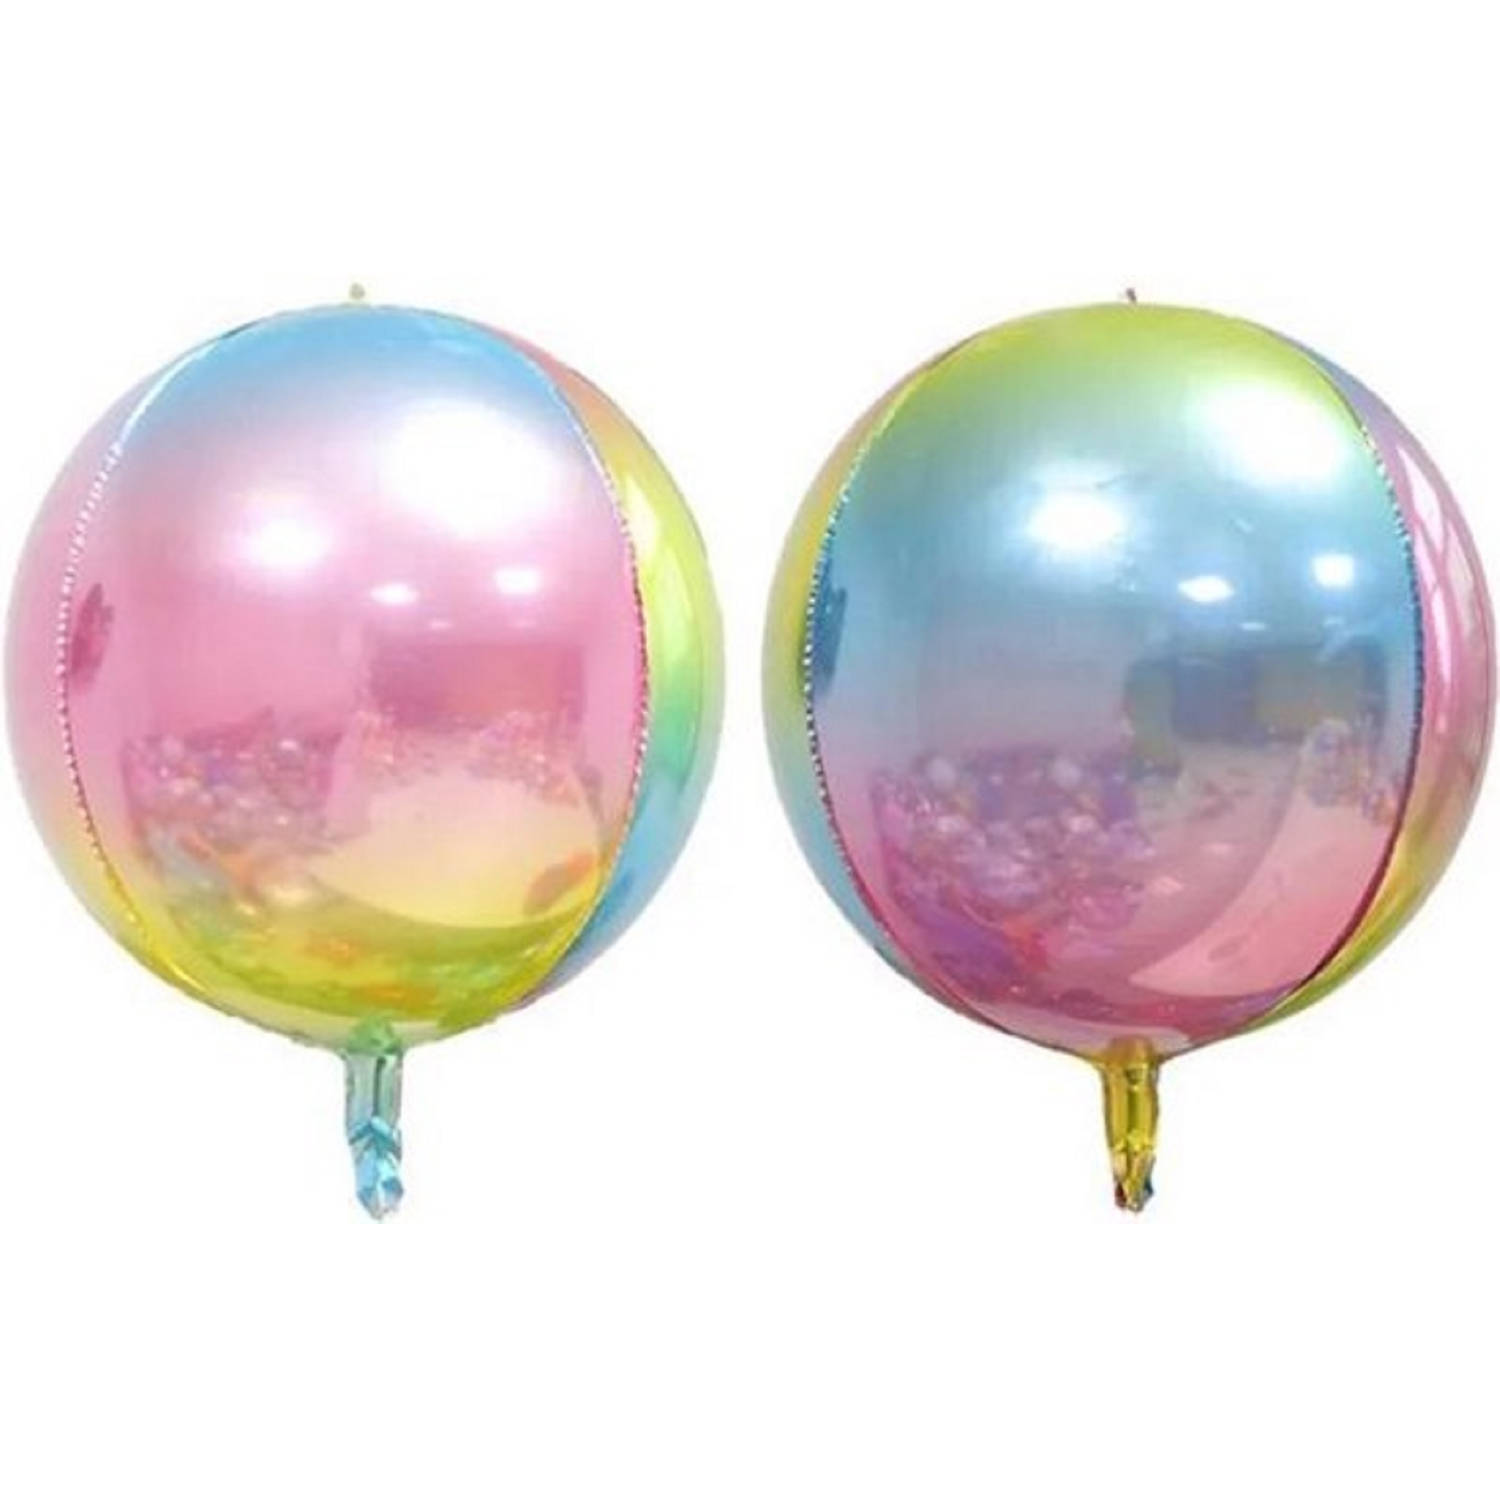 Folie ballon Pastel| 22 inch | 55 cm | Pastel| DM-Products